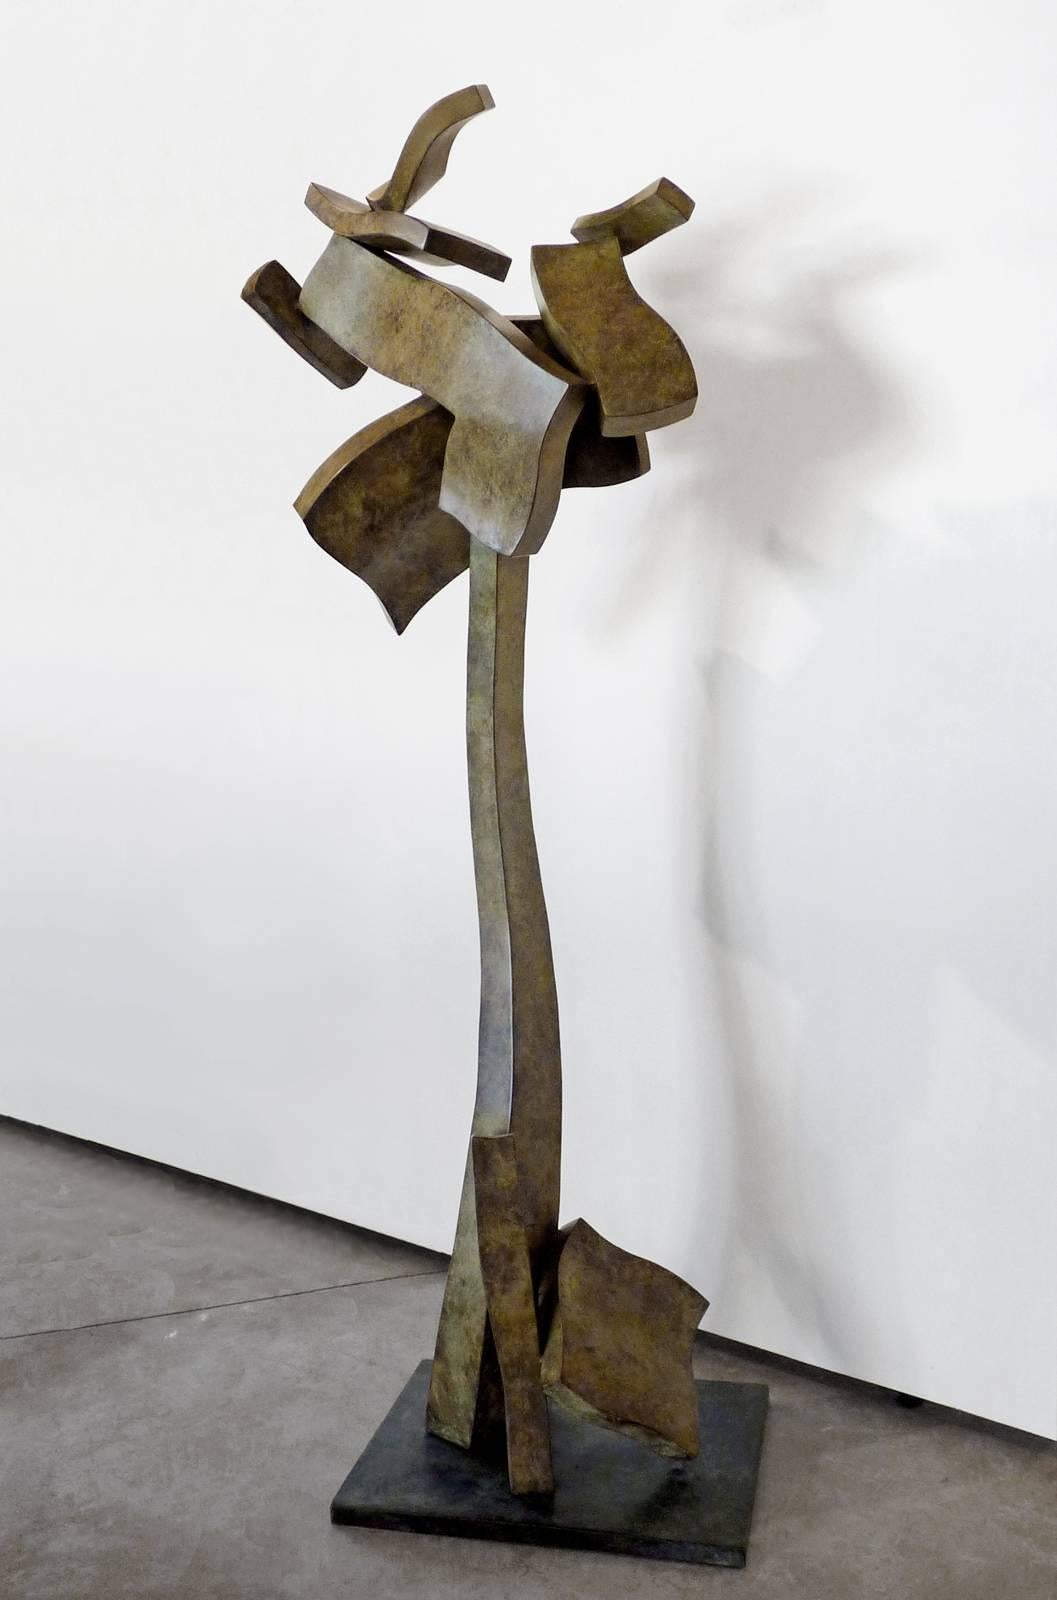 Hans Van de Bovenkamp Abstract Sculpture - Herma -indoor or outdoor bronze sculpture by New York artist Van de Bovenkamp